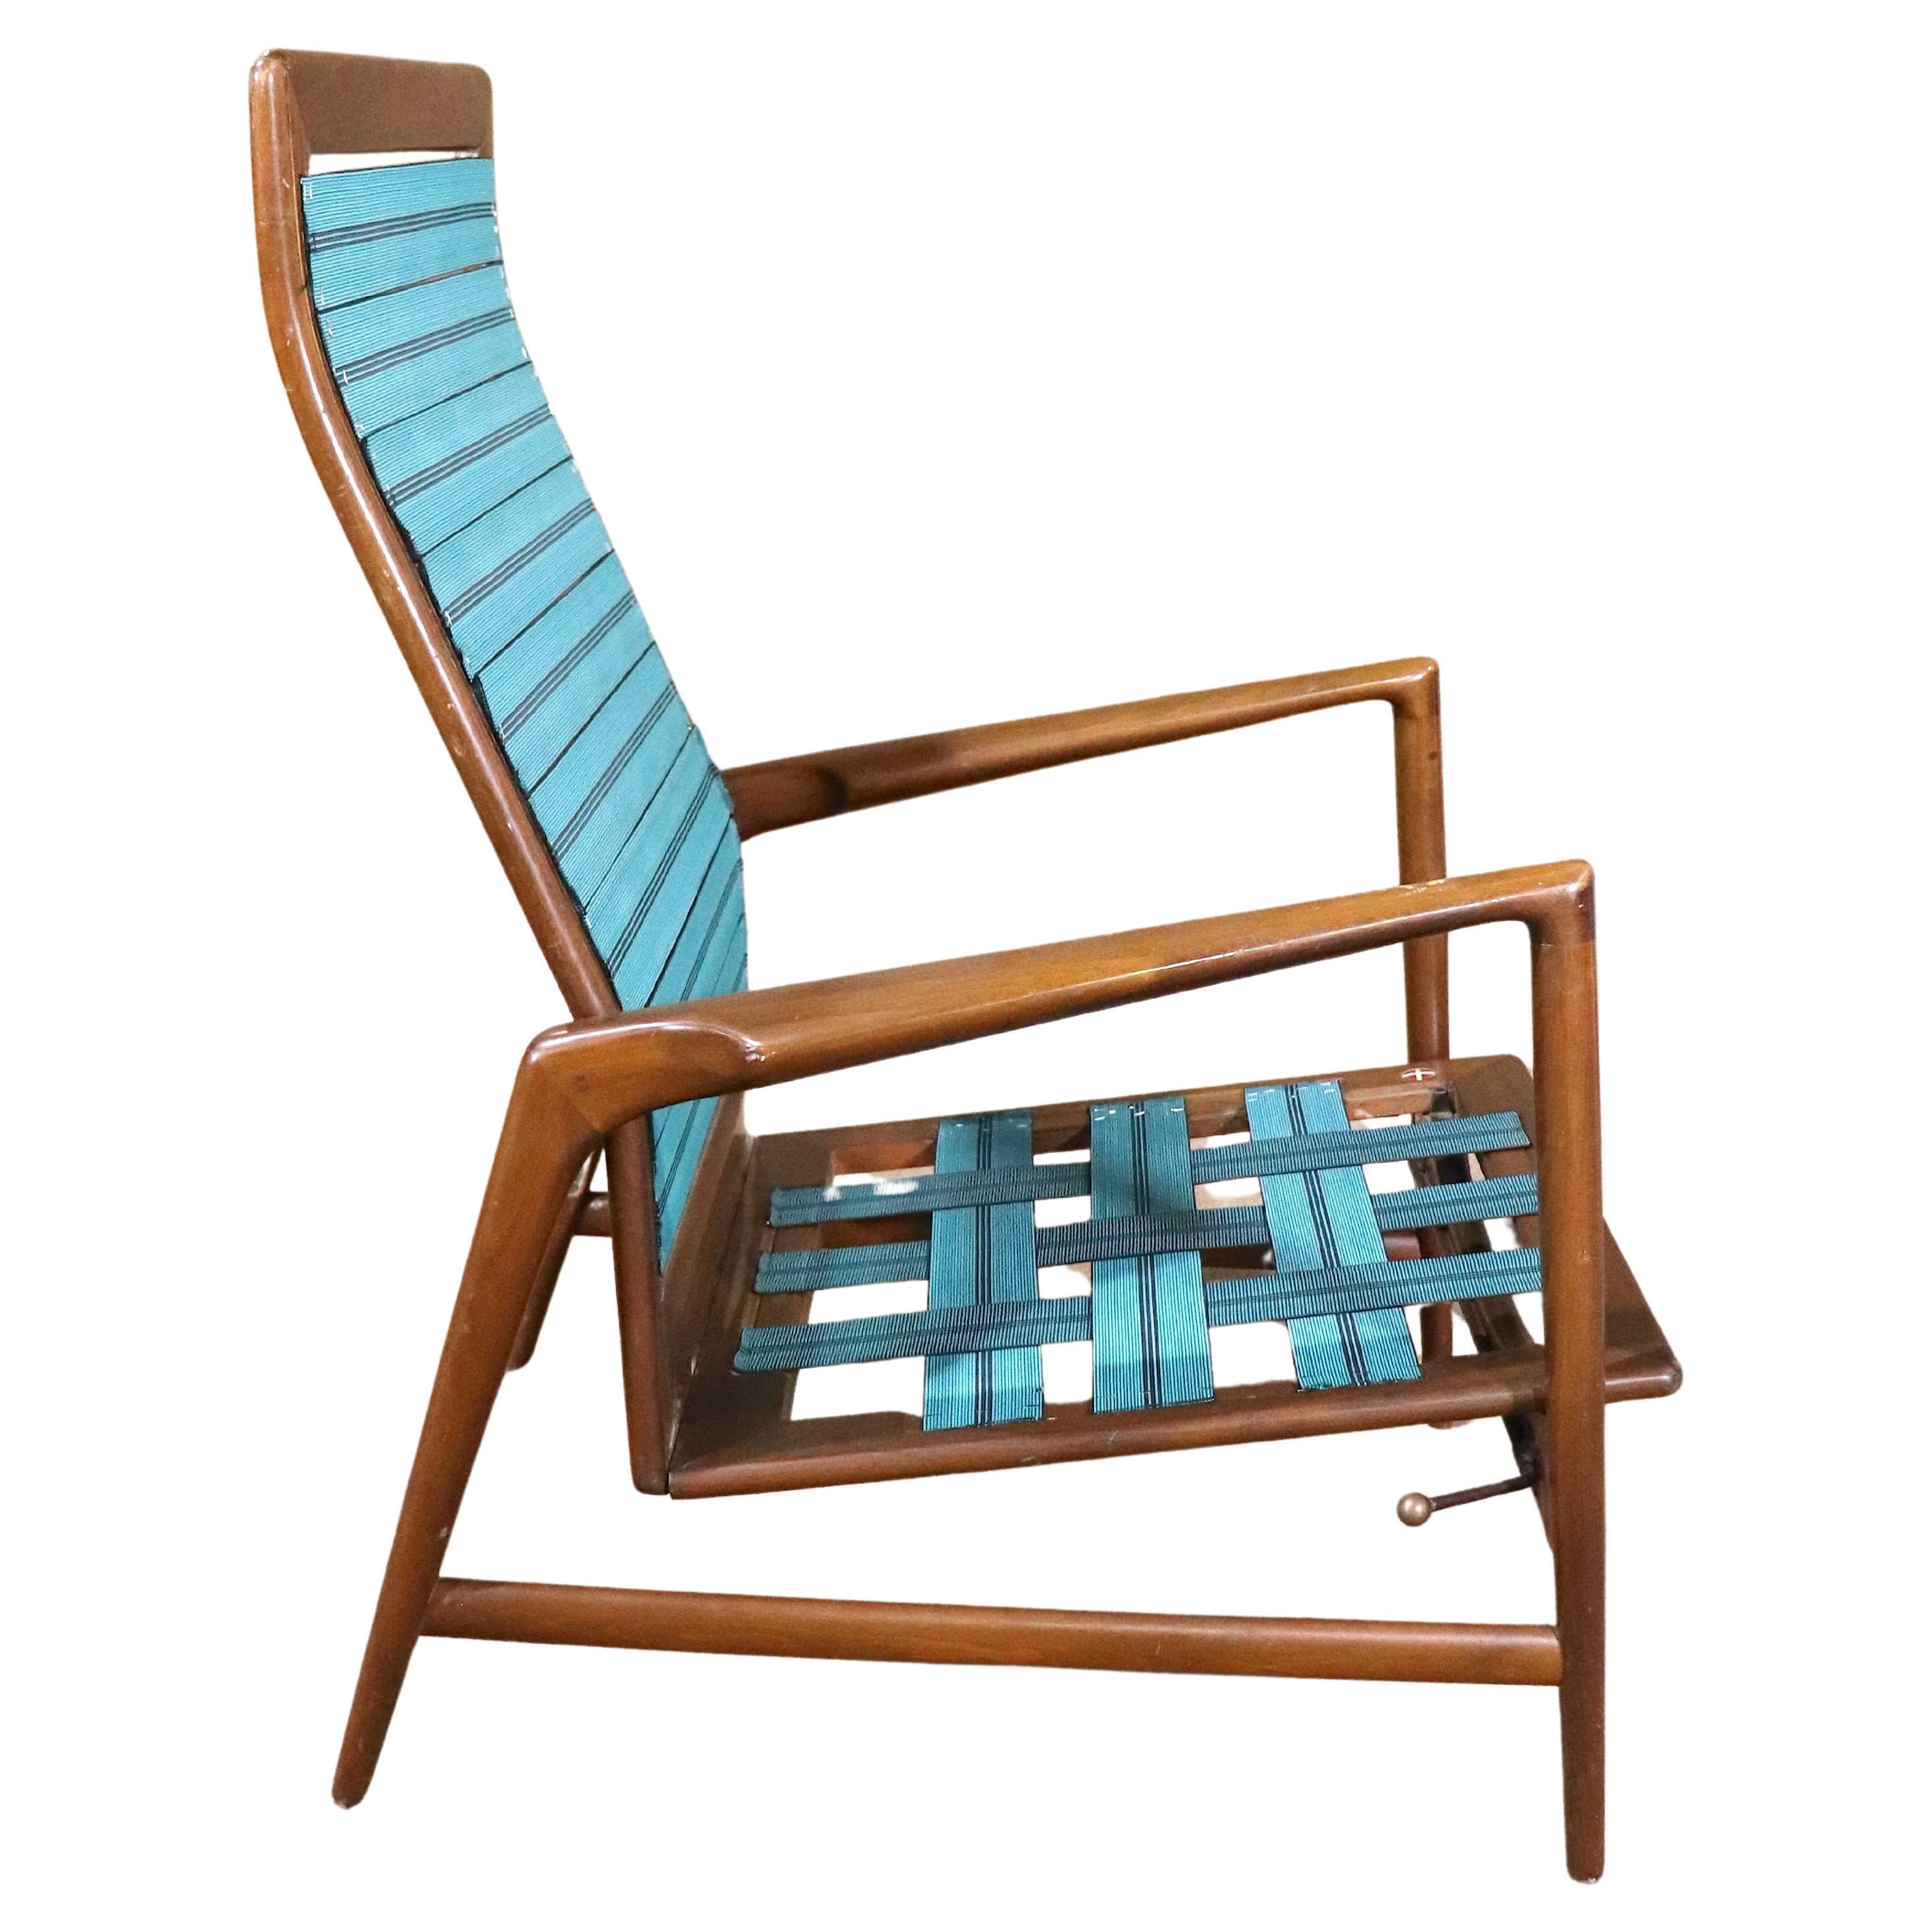 Dänischer Sessel von Ib Kofod-Larsen für Selig. Mit verstellbarer Rückenlehne, geformten Armlehnen und einem hohen, gebogenen Rücken.
Bitte bestätigen Sie den Standort NY oder NJ